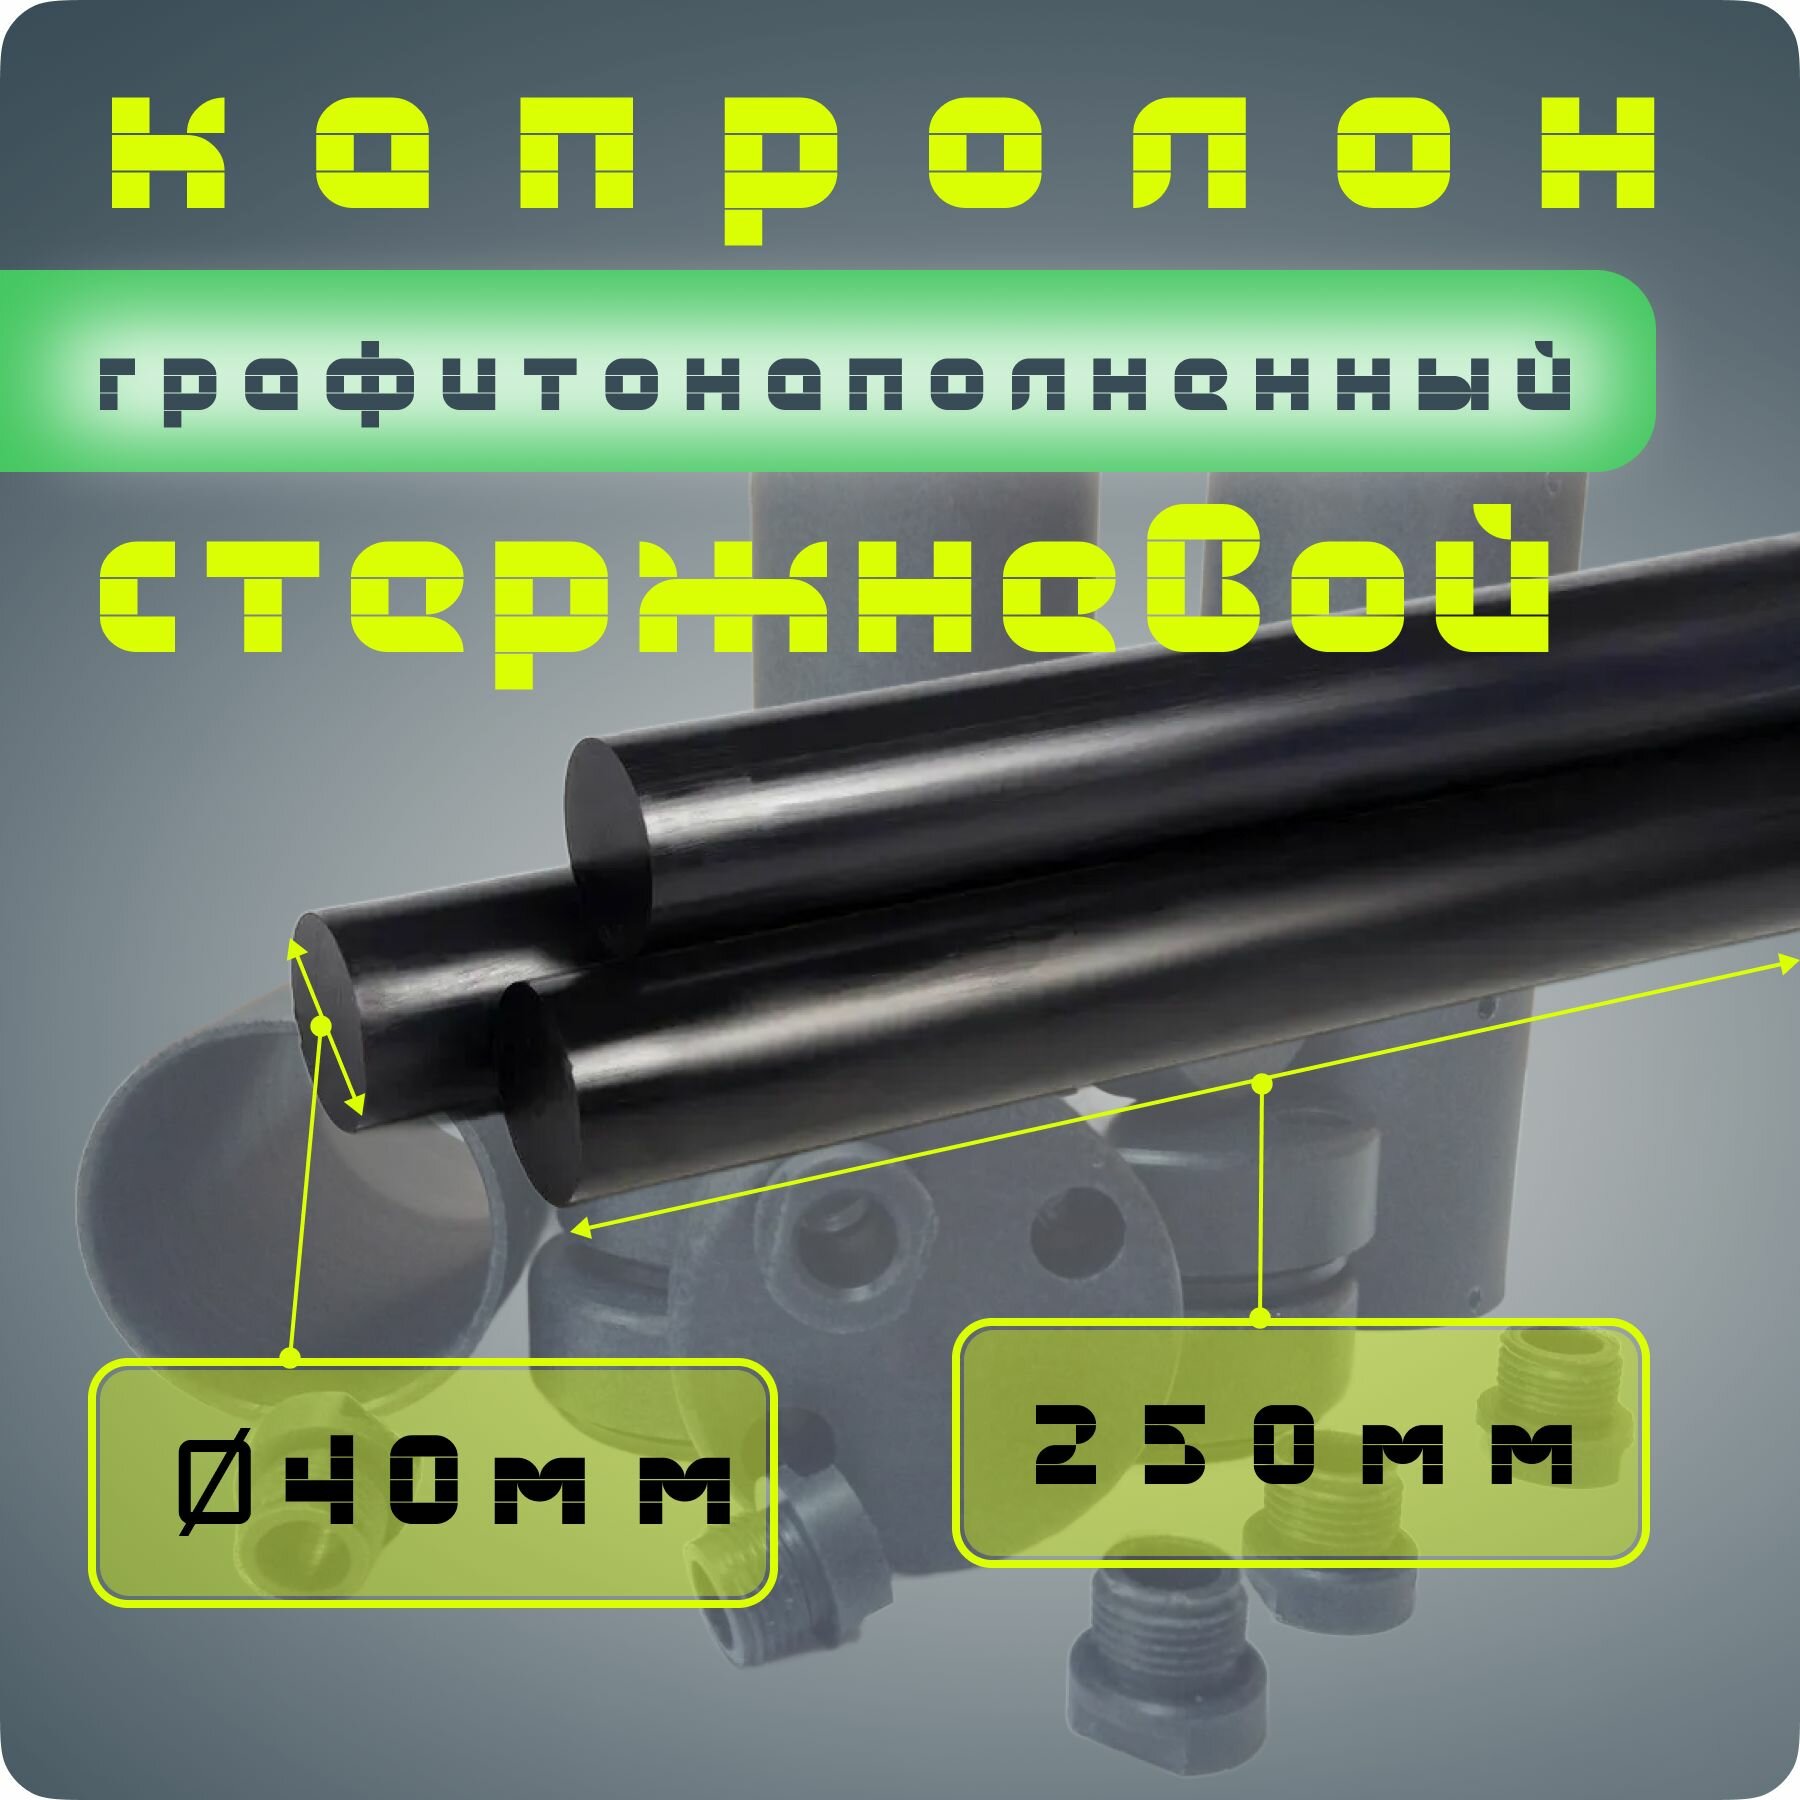 Капролон графитонаполненный стержень ПА-6МГ диаметр 40мм / длина 250мм